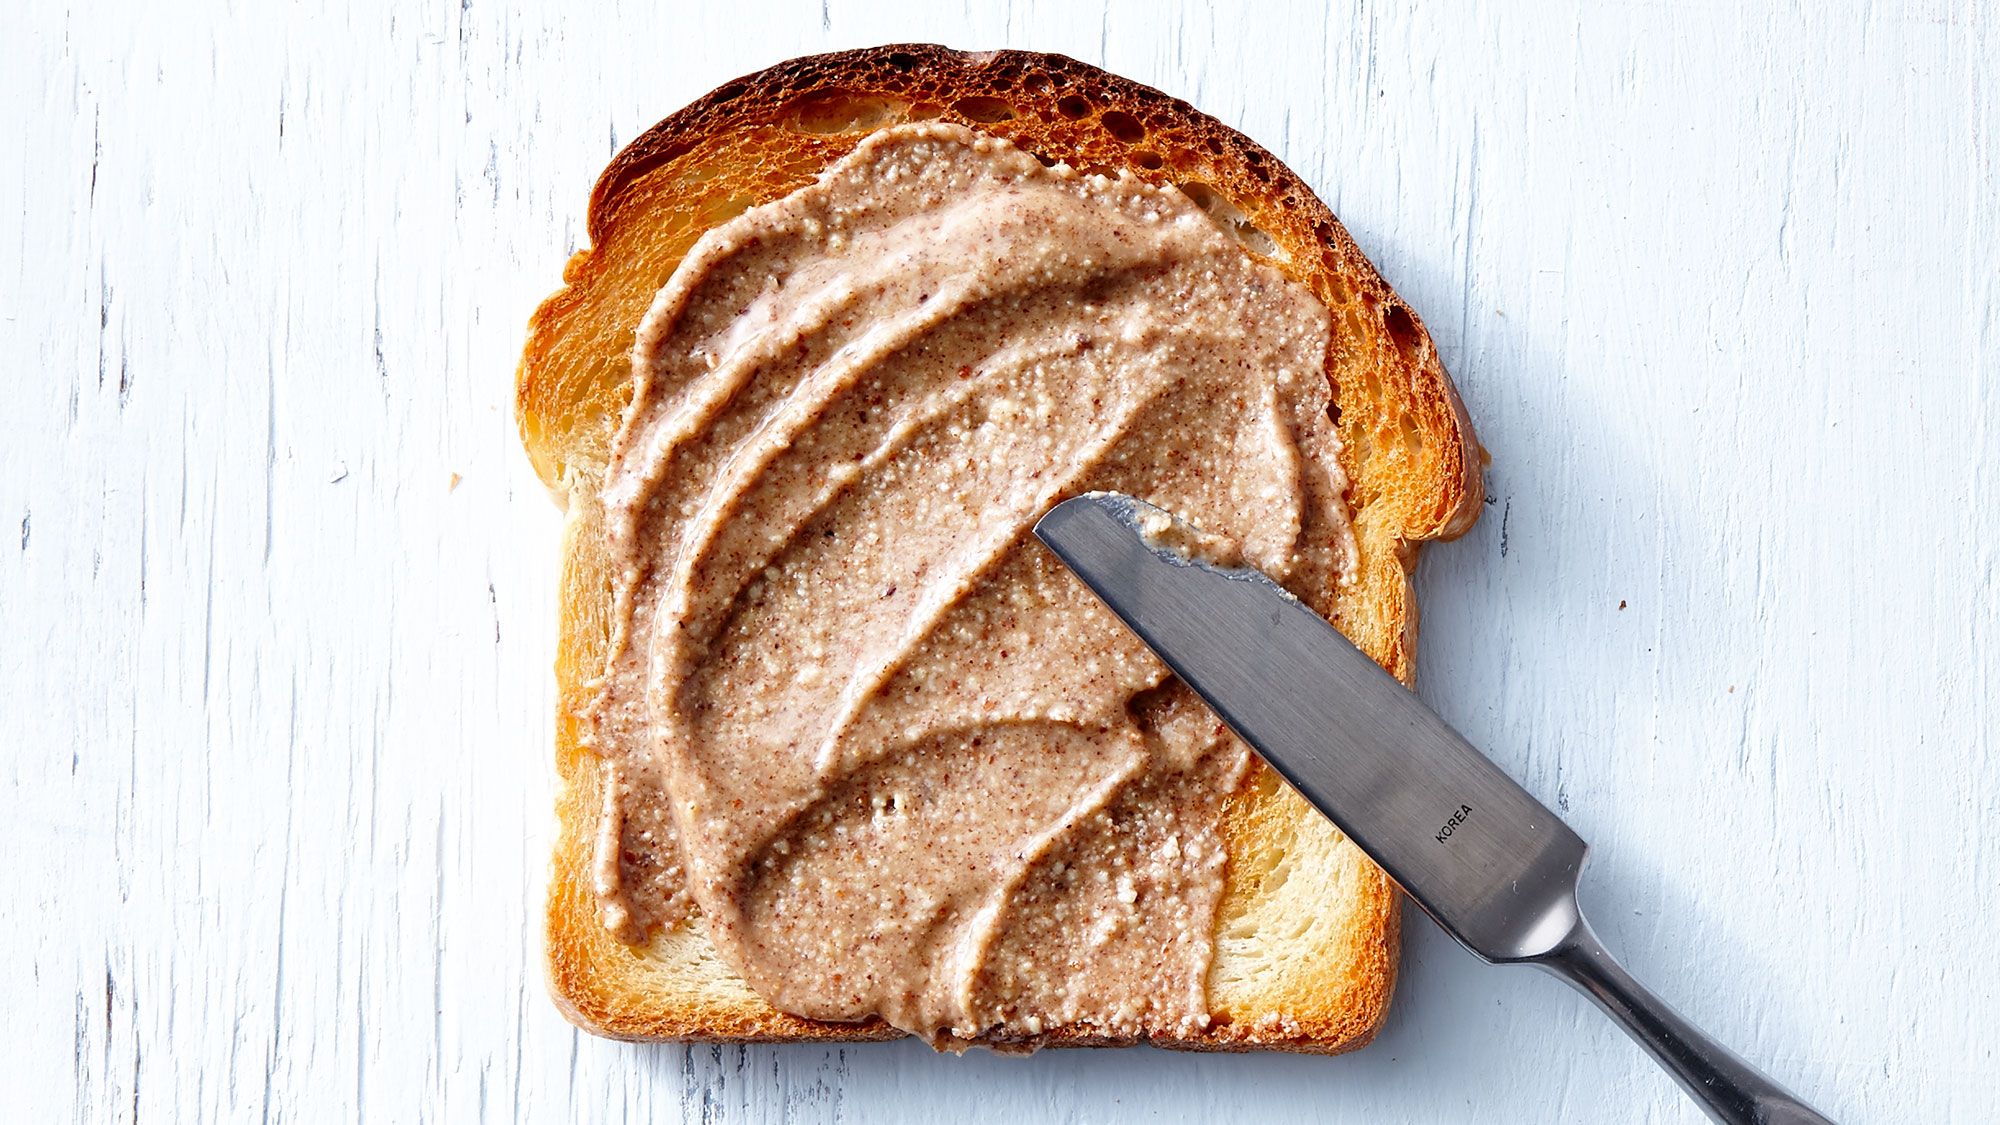 최고의 너트 버터: 빵에 너트 버터를 바르는 칼